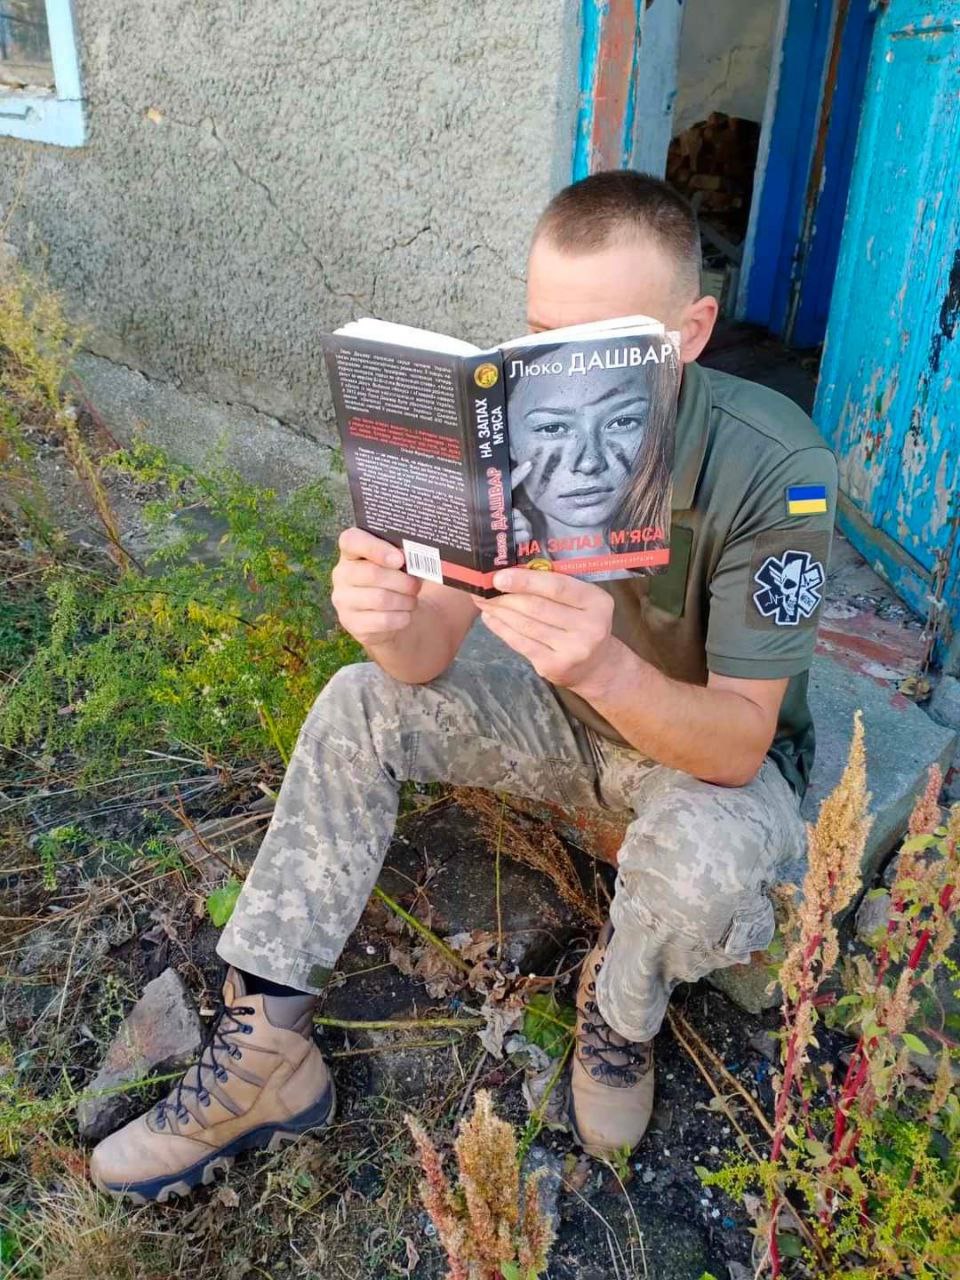 Воїн у коротенькій відпустці читає «На запах м’яса» - цим фото письменниця поділилась у соцмережах. Фото: ФБ Люко Дашвар